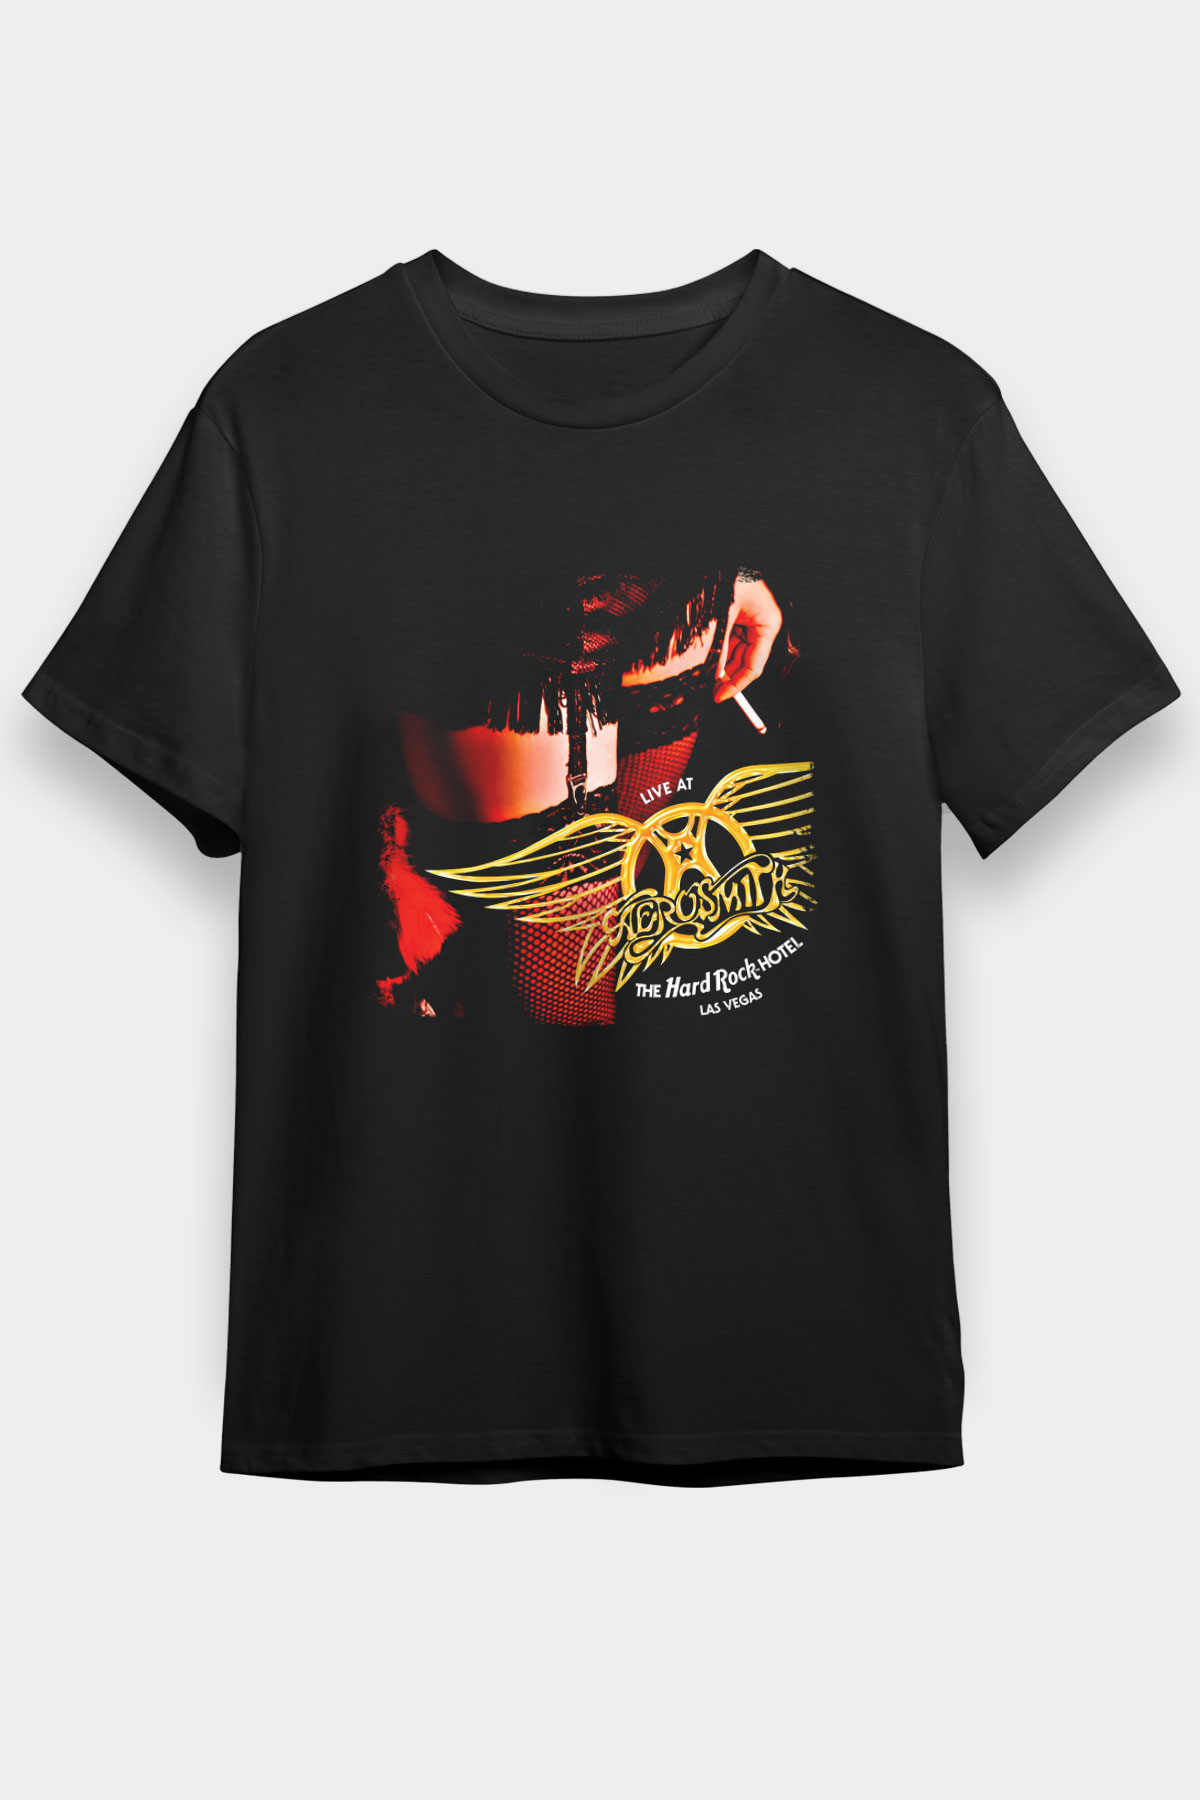 Aerosmith , Music Band ,Unisex Tshirt 19 /